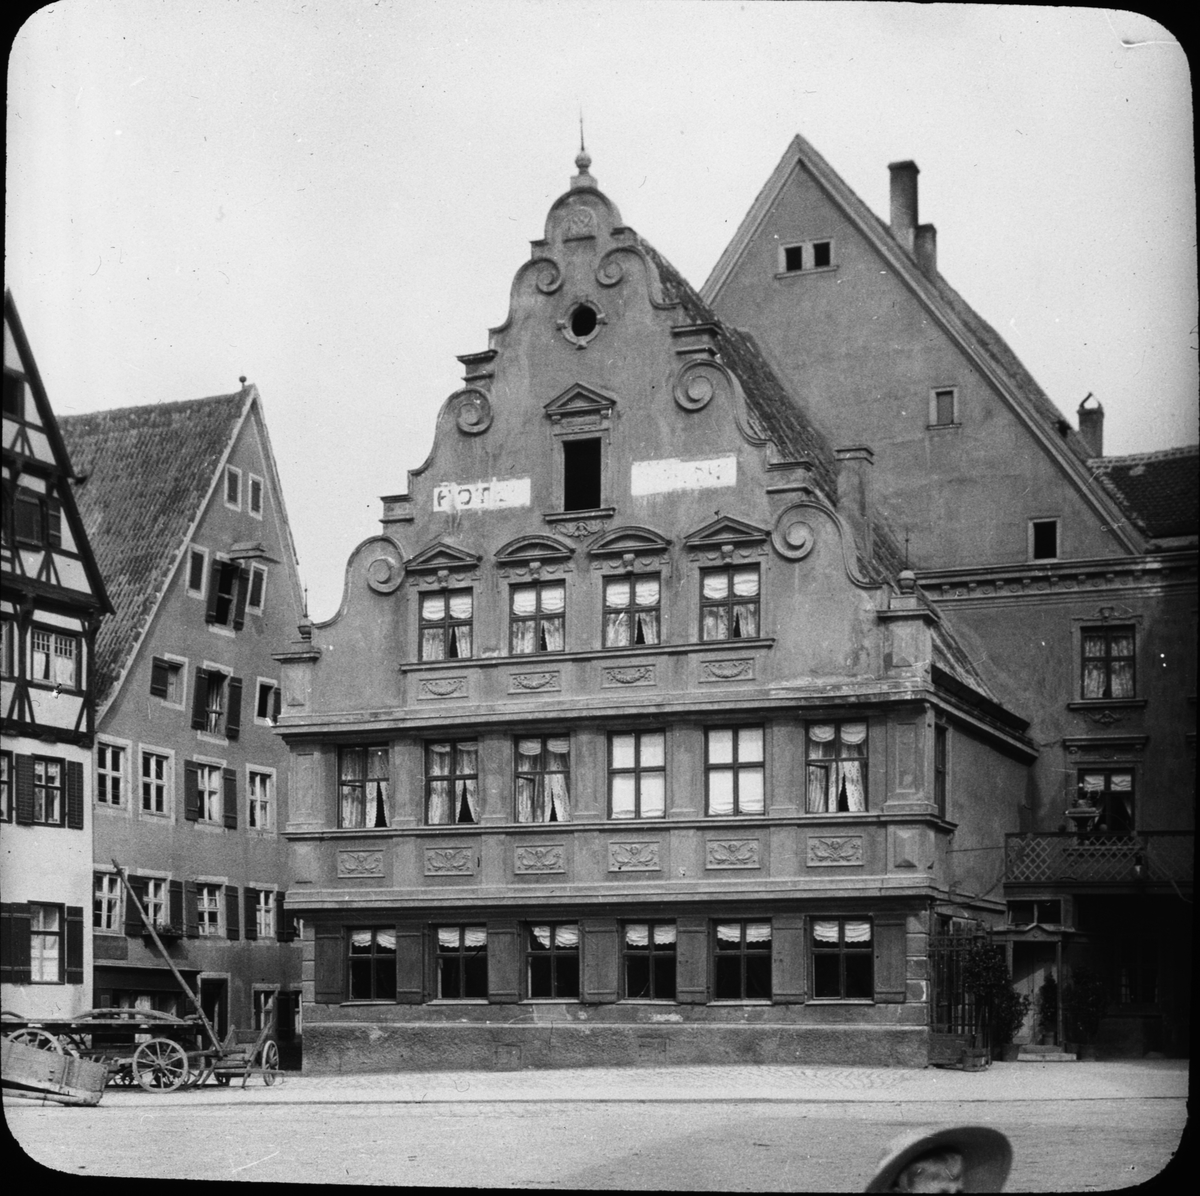 Skioptikonbild med motiv av Hotel Krone vid Holzmarkt i Nördlingen.
Bilden har förvarats i kartong märkt: Vårresan 1911. Nördlingen IX. Text på bild: "Hotel Krome".